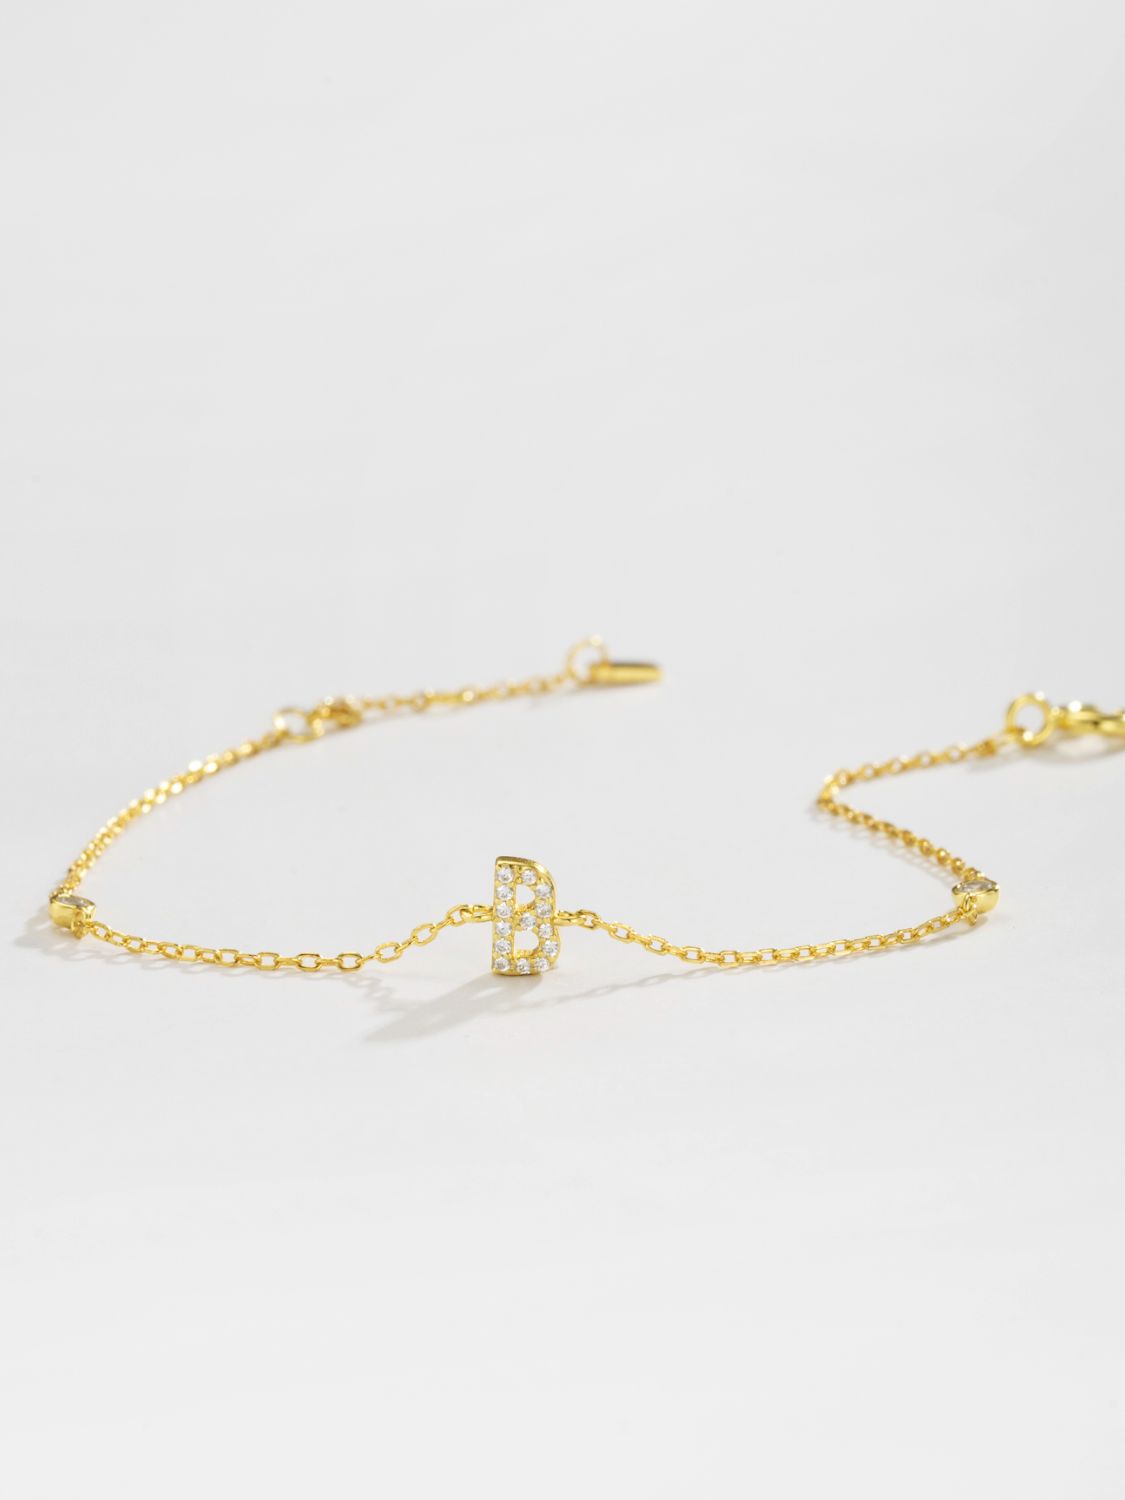 A To F Zircon 925 Sterling Silver Bracelet - Women’s Jewelry - Bracelets - 9 - 2024